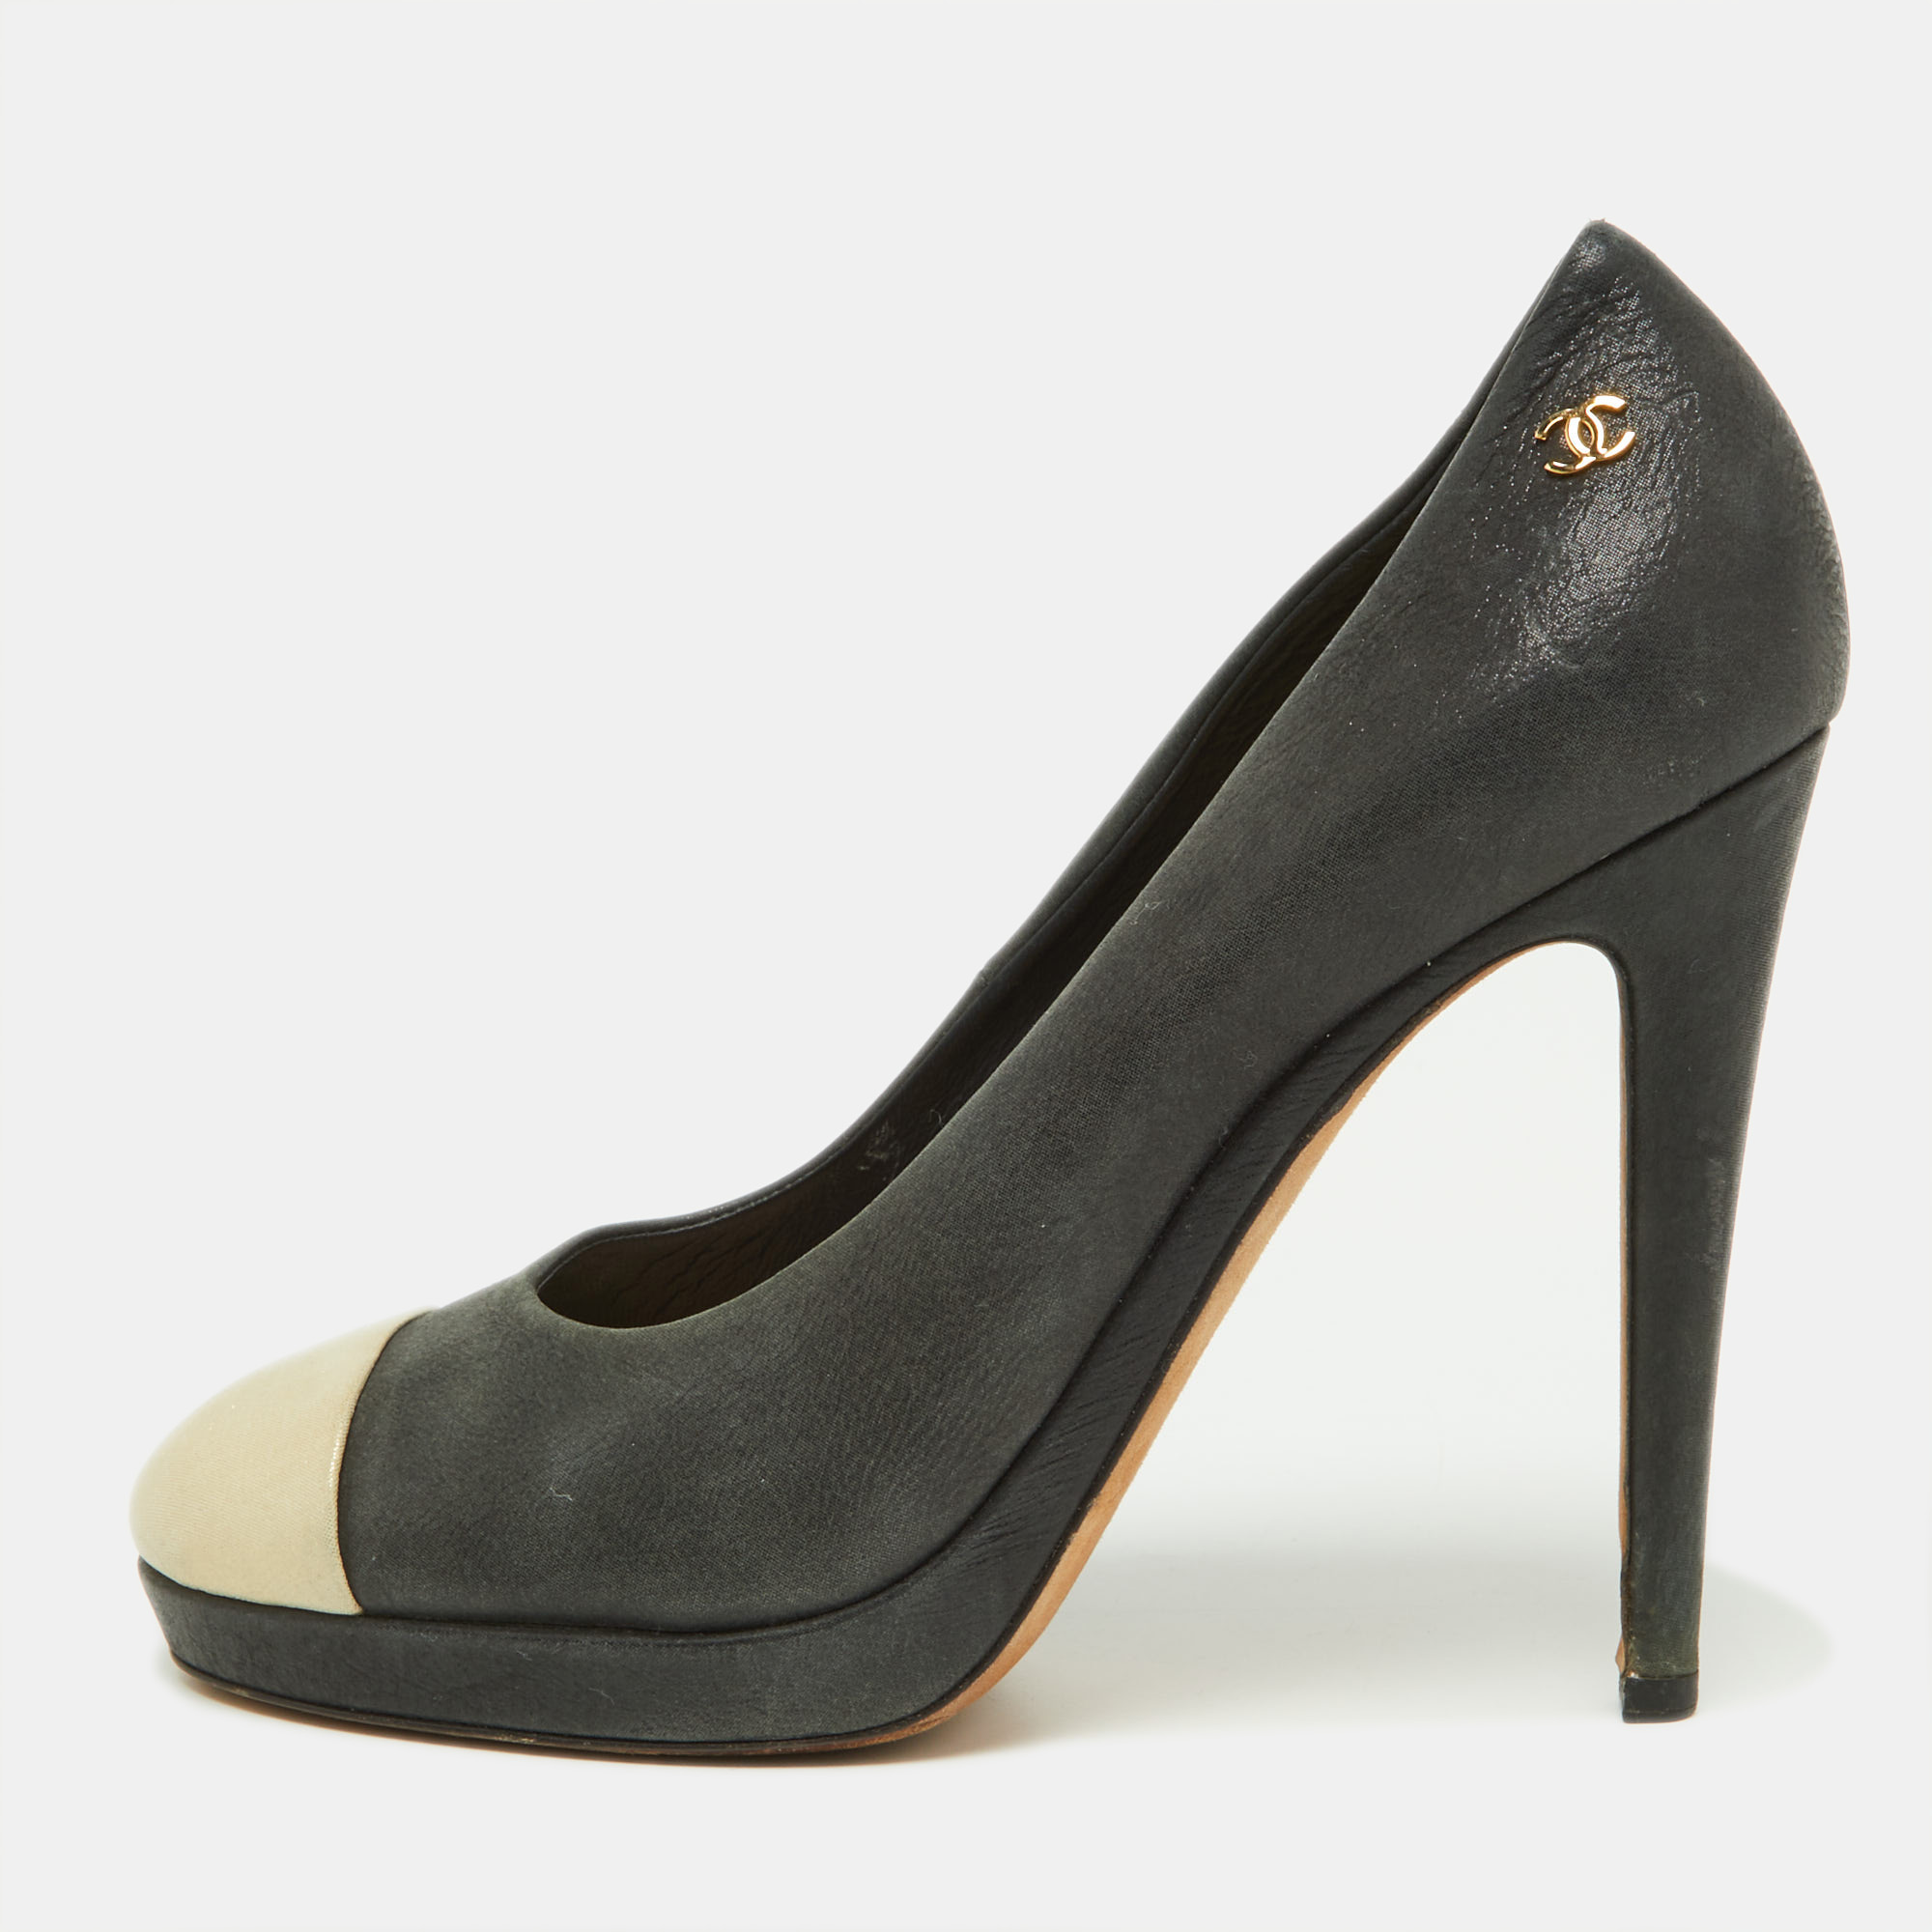 Chanel beige/black iridescent leather cc cap toe pumps size 38